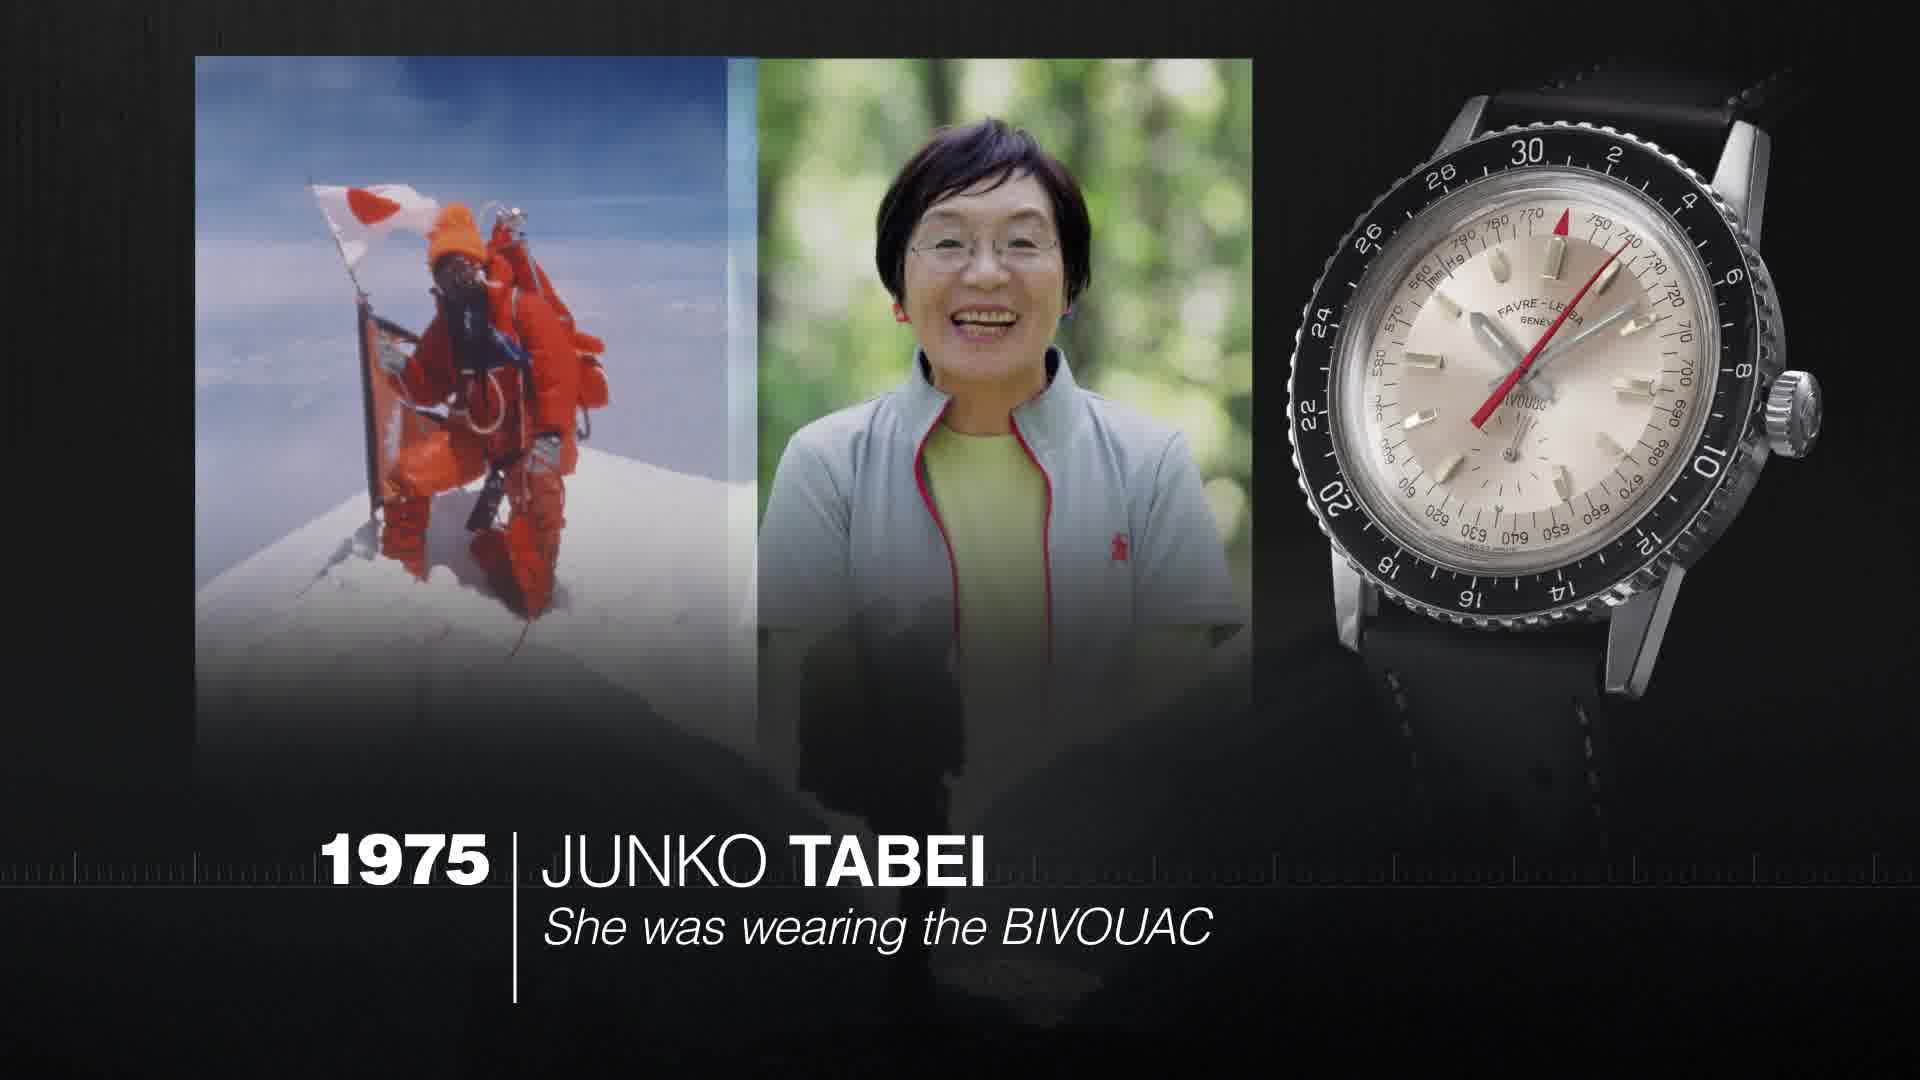 【Favre-Leuba 域峰】- 歡慶品牌 283 週年，瑞士第二歷史悠久的鐘錶品牌。 勇於追尋新的目標與探險、不斷挑戰現況、挑戰不同觀點、積極尋找創意的方案、將障礙視為契 機，選擇超越極限而不退縮 – 就是這樣的態度，是 Favre-Leuba 域峰品牌的基石，也透過設計的 錶款敘述過往的華麗史蹟。 1962 年推出的 Bivouac，是當時第一款搭配無液氣壓器的機械腕錶， 用以衡量高度與氣壓:另外 1968 年推出的 Bathy，不僅顯示潛水時間，也顯示潛入深度。這些都 是極具代表性的作品。無論是征服最新疆土，無論上高山或深入海洋，無論是高溫或潮濕，甚至 極冷的天候，永遠是可靠的伴侶。... Raider 與 Chief 系列的錶款，將獨特的設計結合創新科技。經典元素包括十四邊形的錶圈、大膽的 指針和刻度，讓這些錶如 Favre-Leuba 經典款一樣突出。此系列將先在指定市場推出，包括印度、 中東、日本、台灣、香港等亞洲市場，還有瑞士、德國與奧地利等歐洲市場。 如欲了解更多，請密切留意高時錶行Facebook 專頁或親臨或至電到高時錶行以下分店查詢。